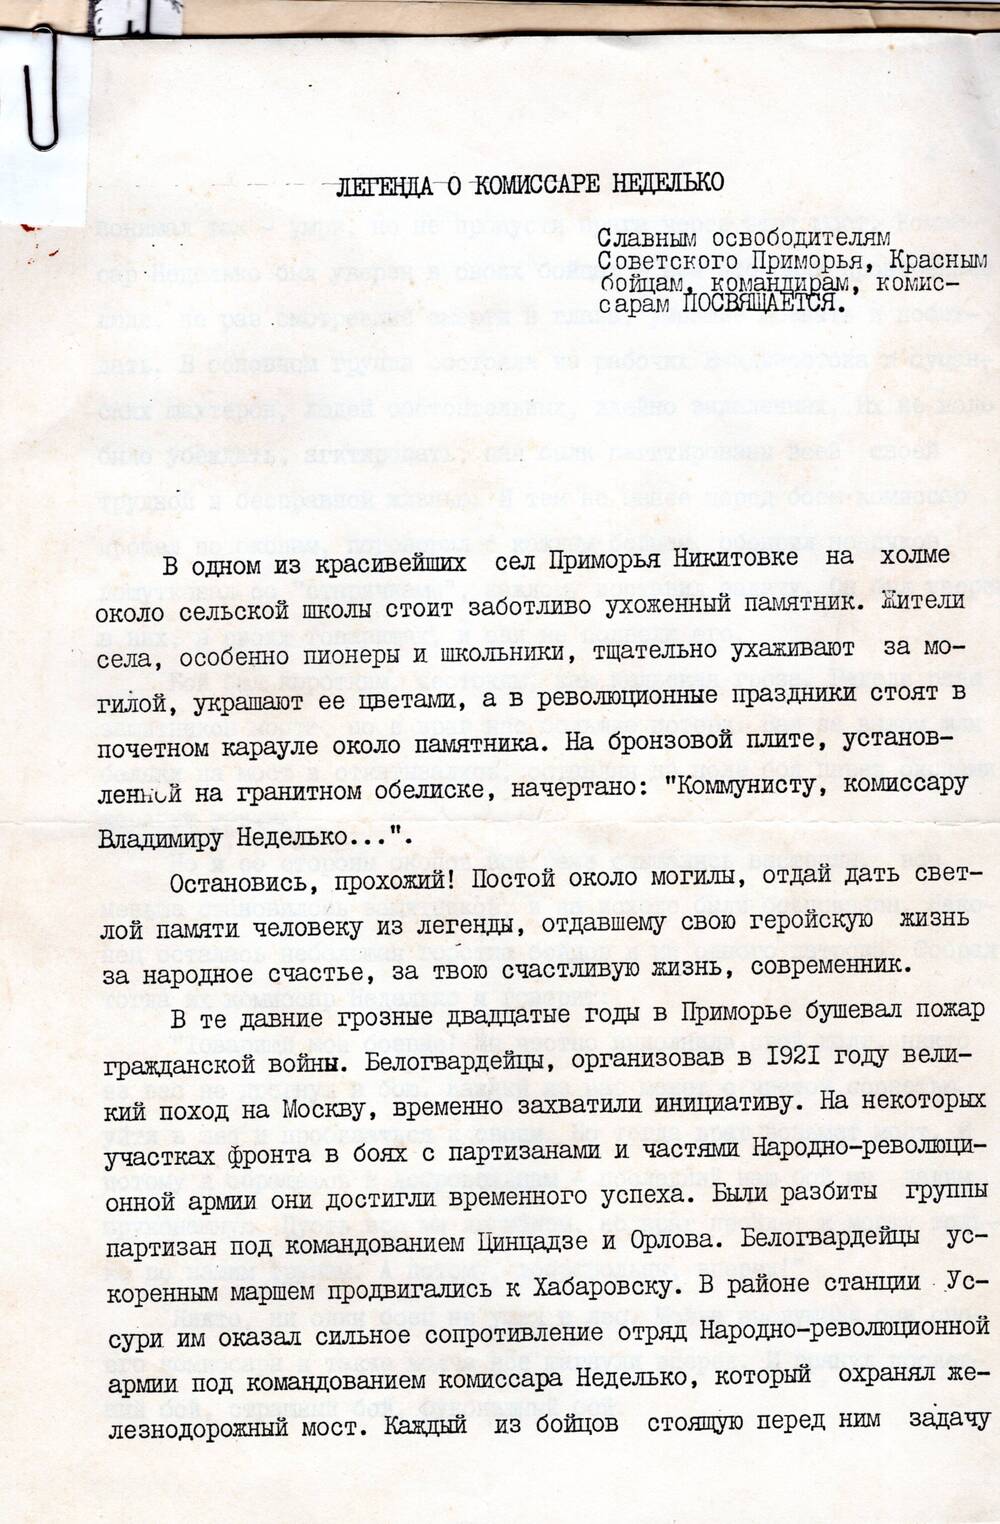 Документы из личного дела героя гражданской войны на Дальнем Востоке Неделько Владимира Григорьевича